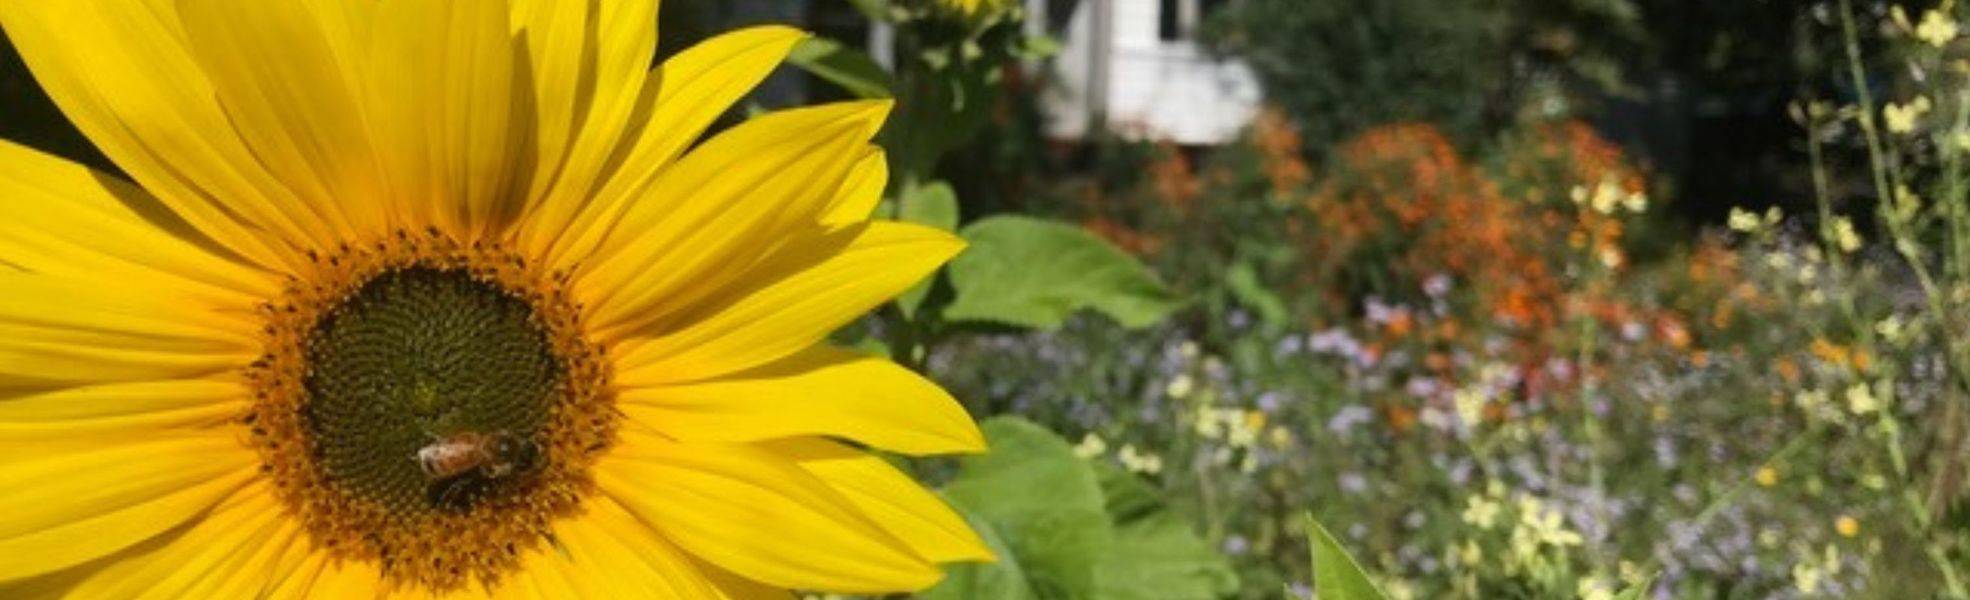 Sonnenblume im Garten - Freiwilligenarbeit im Eco Village